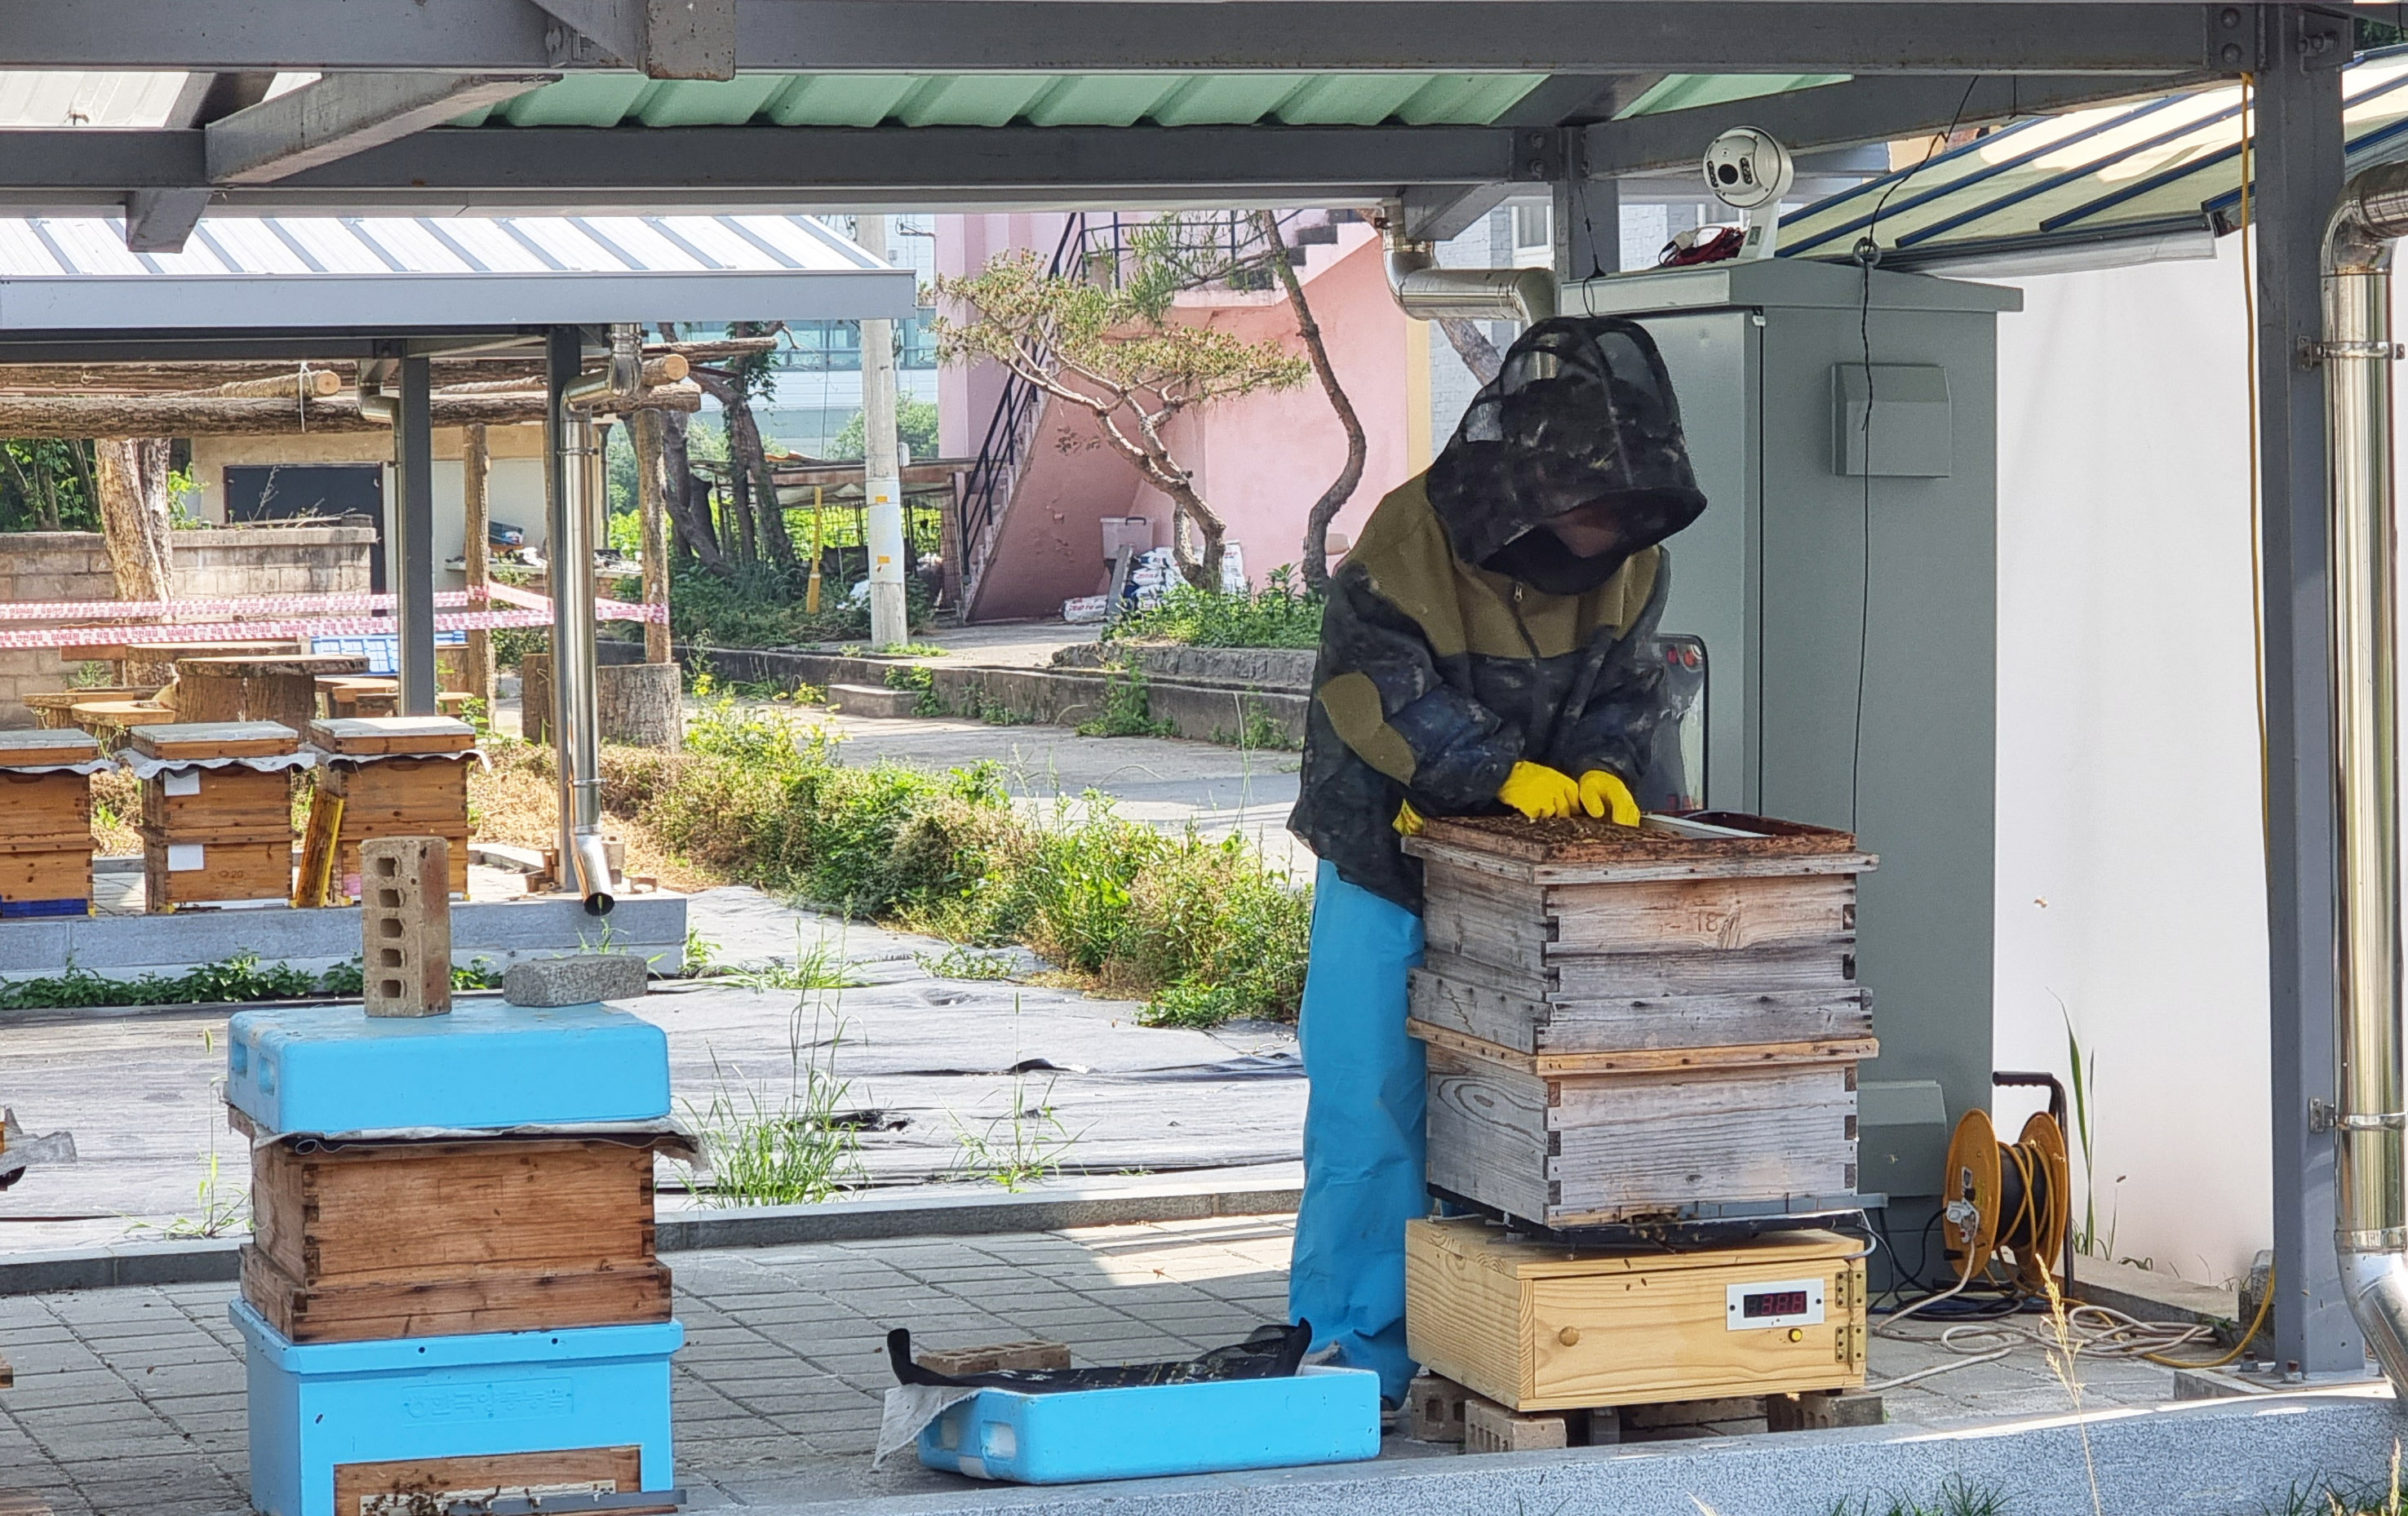 전남도는 양봉농가의 고령화와 지구온난화, 꿀벌 집단 폐사 등에 대응하기 위해 인공지능을 통한 사양관리 연구를 시작한다고 밝혔다.